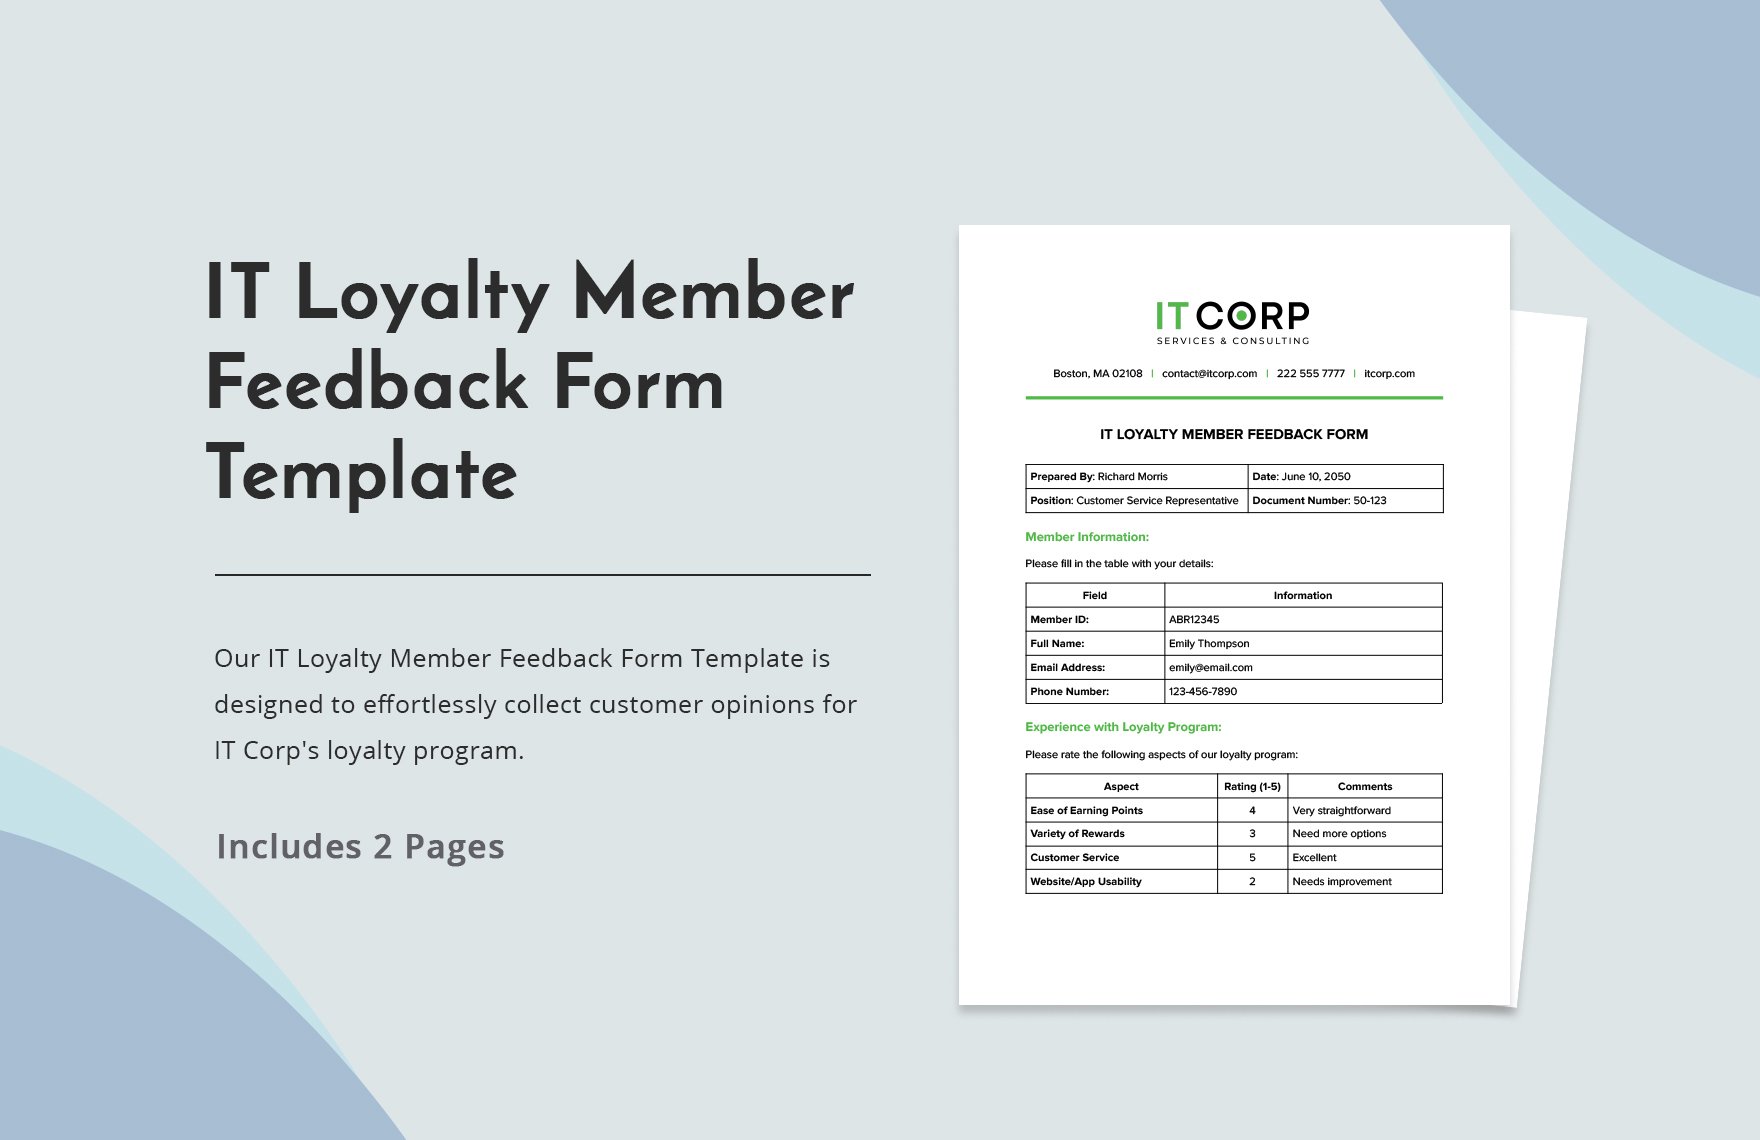 IT Loyalty Member Feedback Form Template